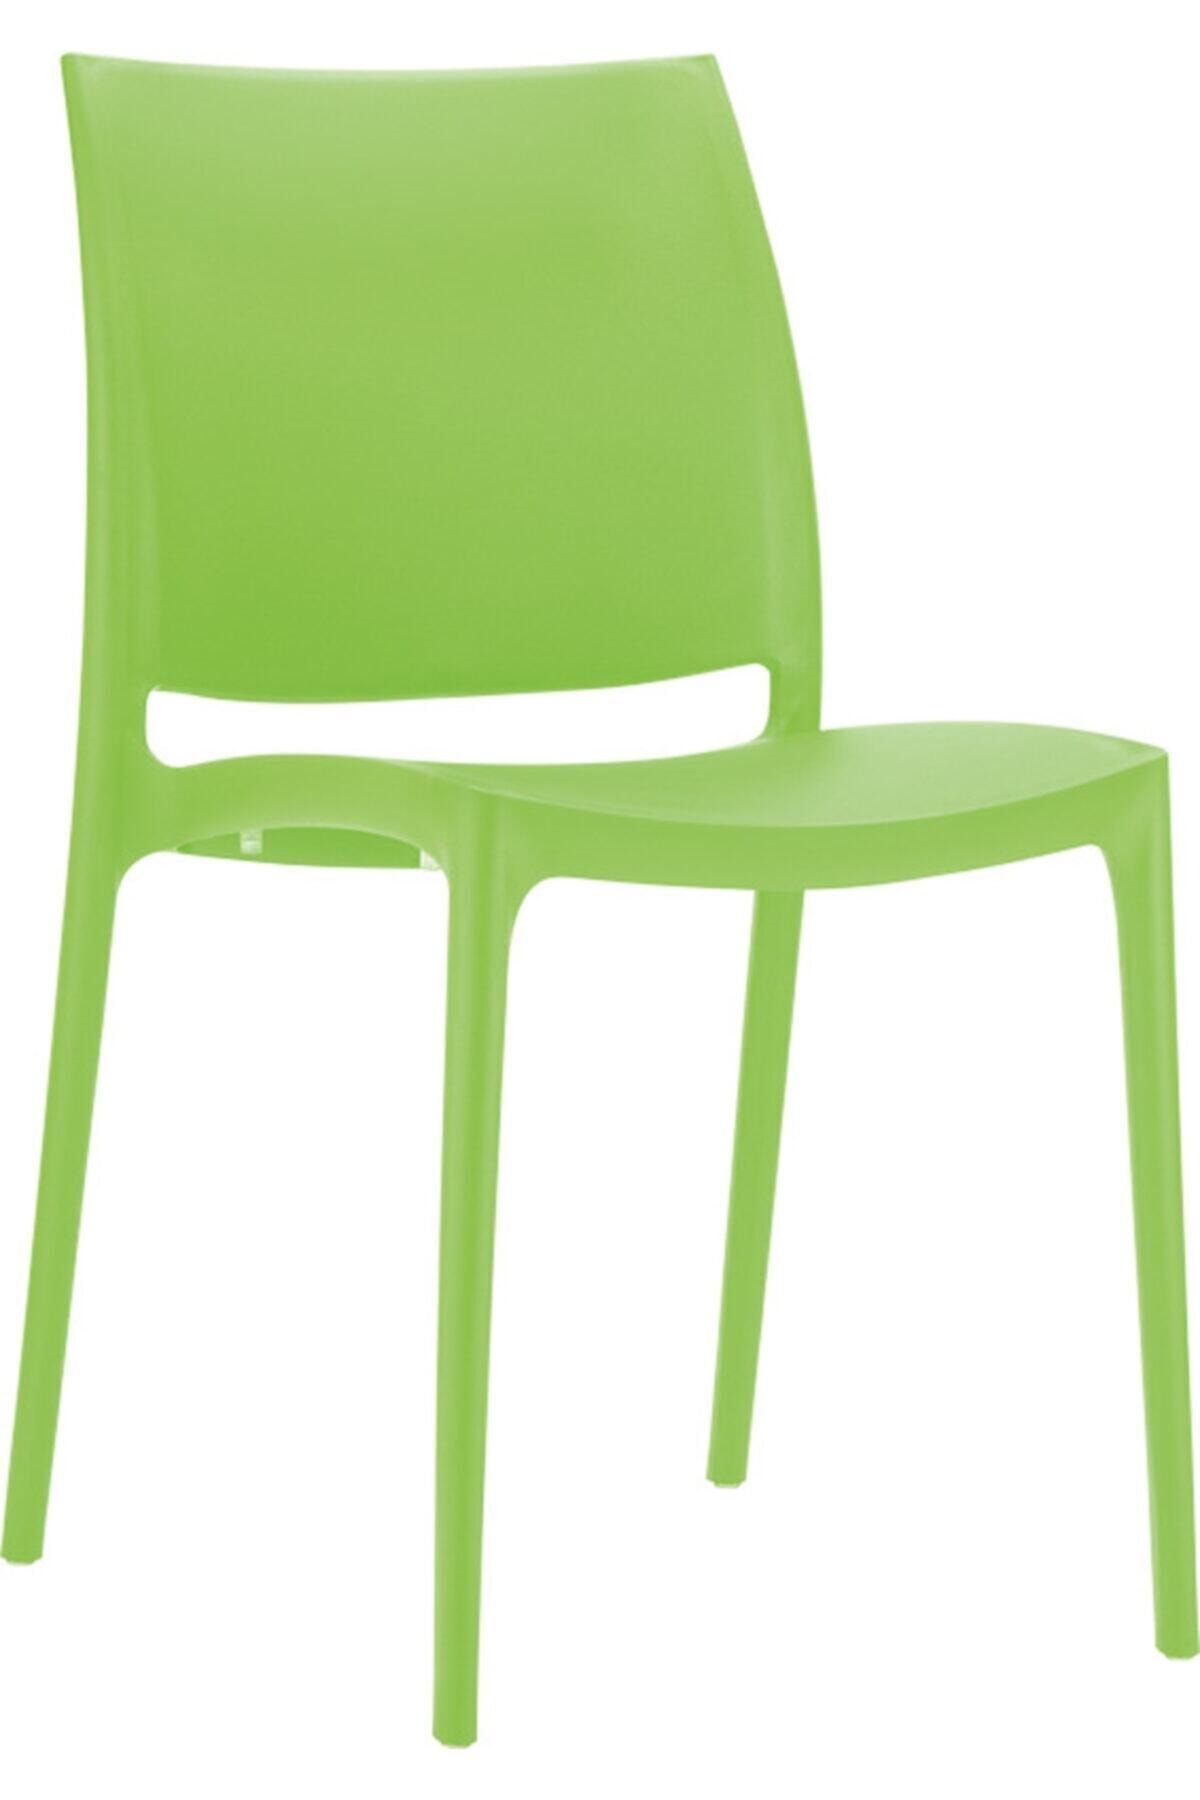 Siesta Maya Sandalye Tropik Yeşil